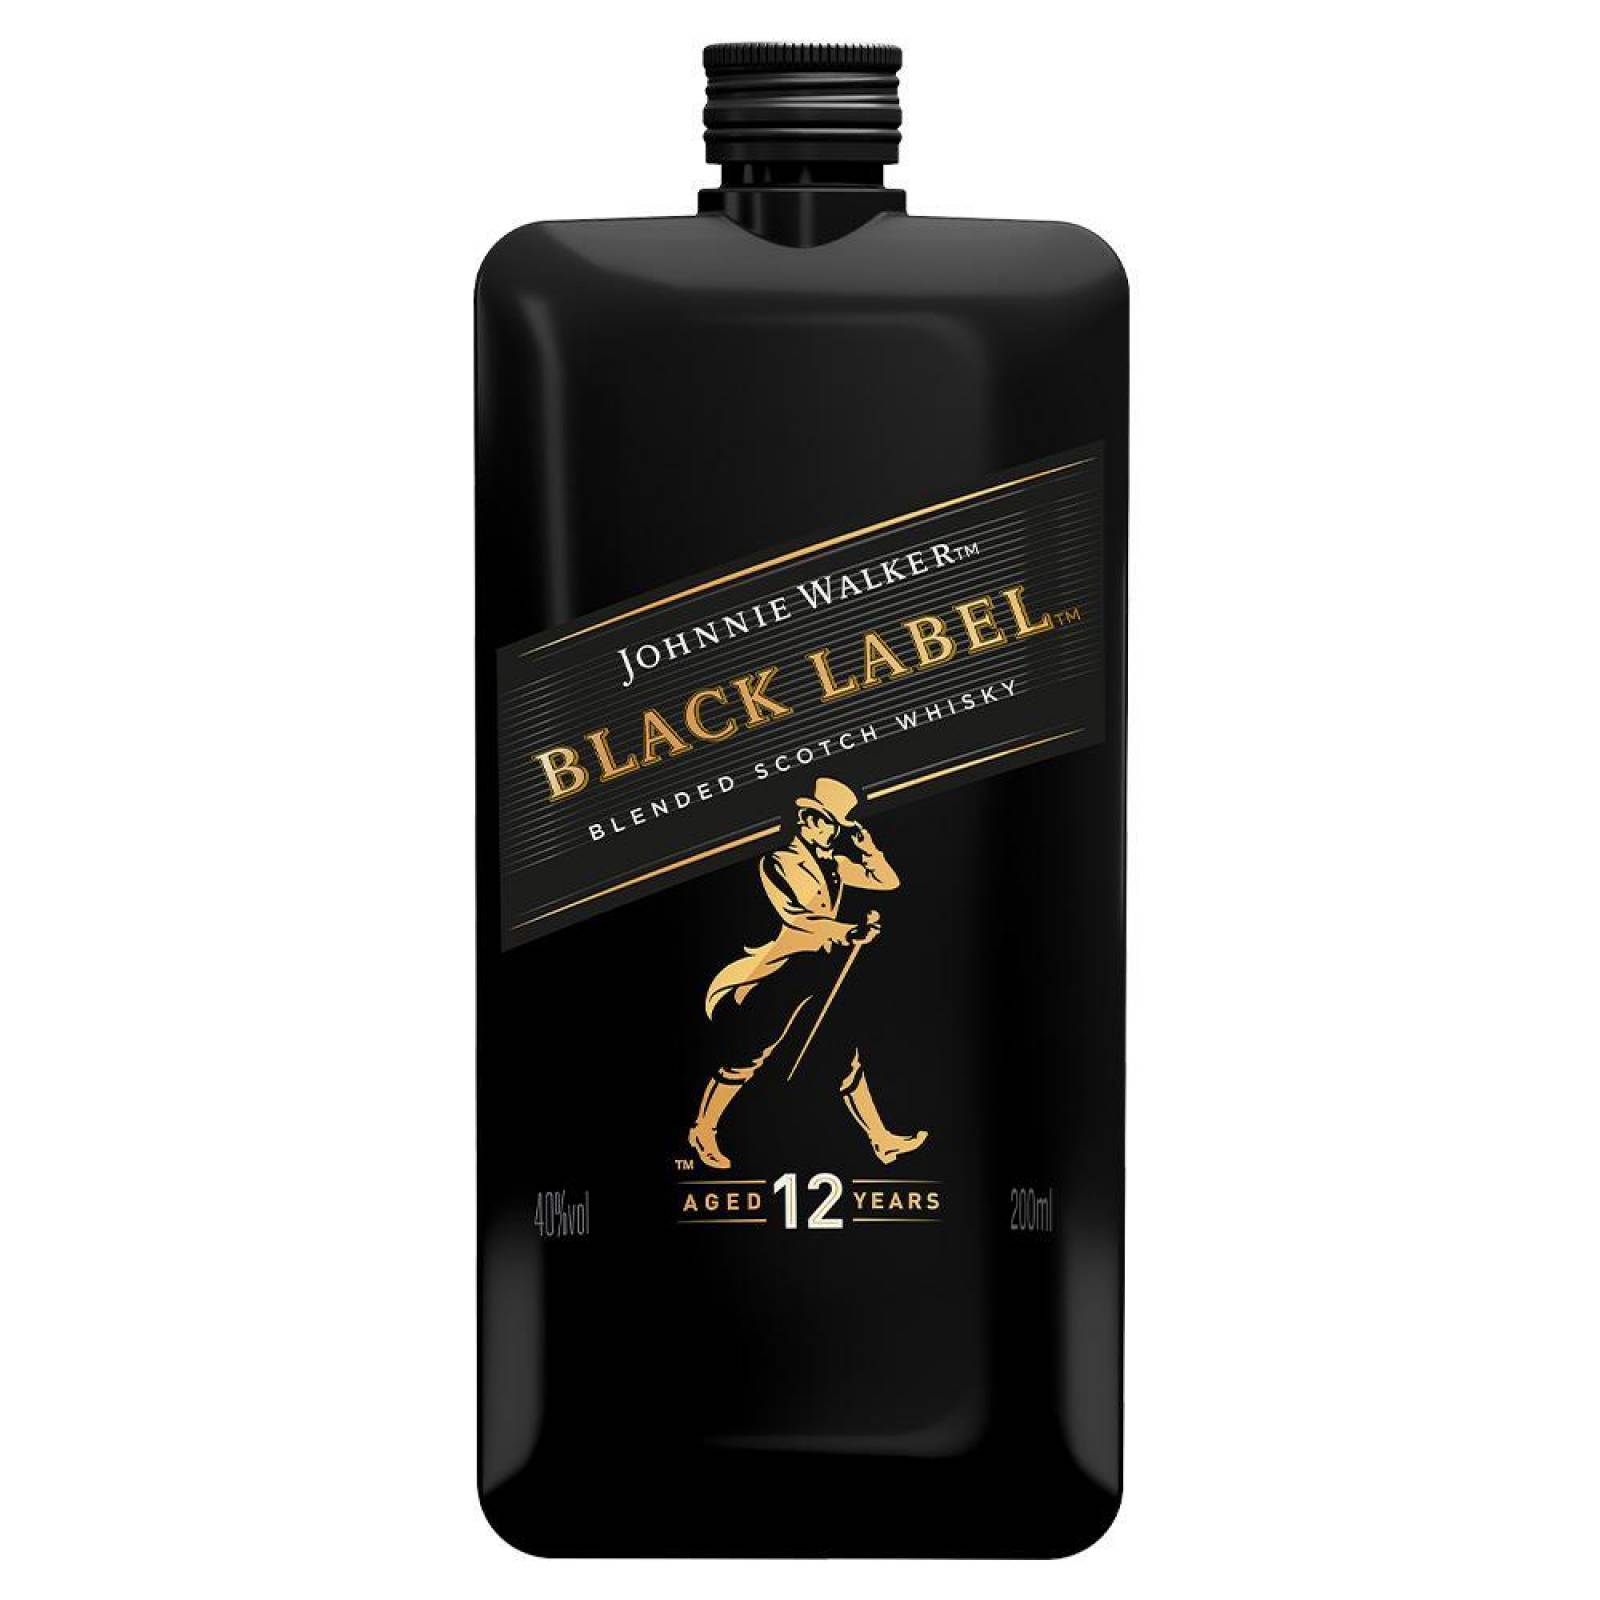 Pack de 4 Whisky Johnnie Walker Blend Black Label Pocket Scoth 200 ml 